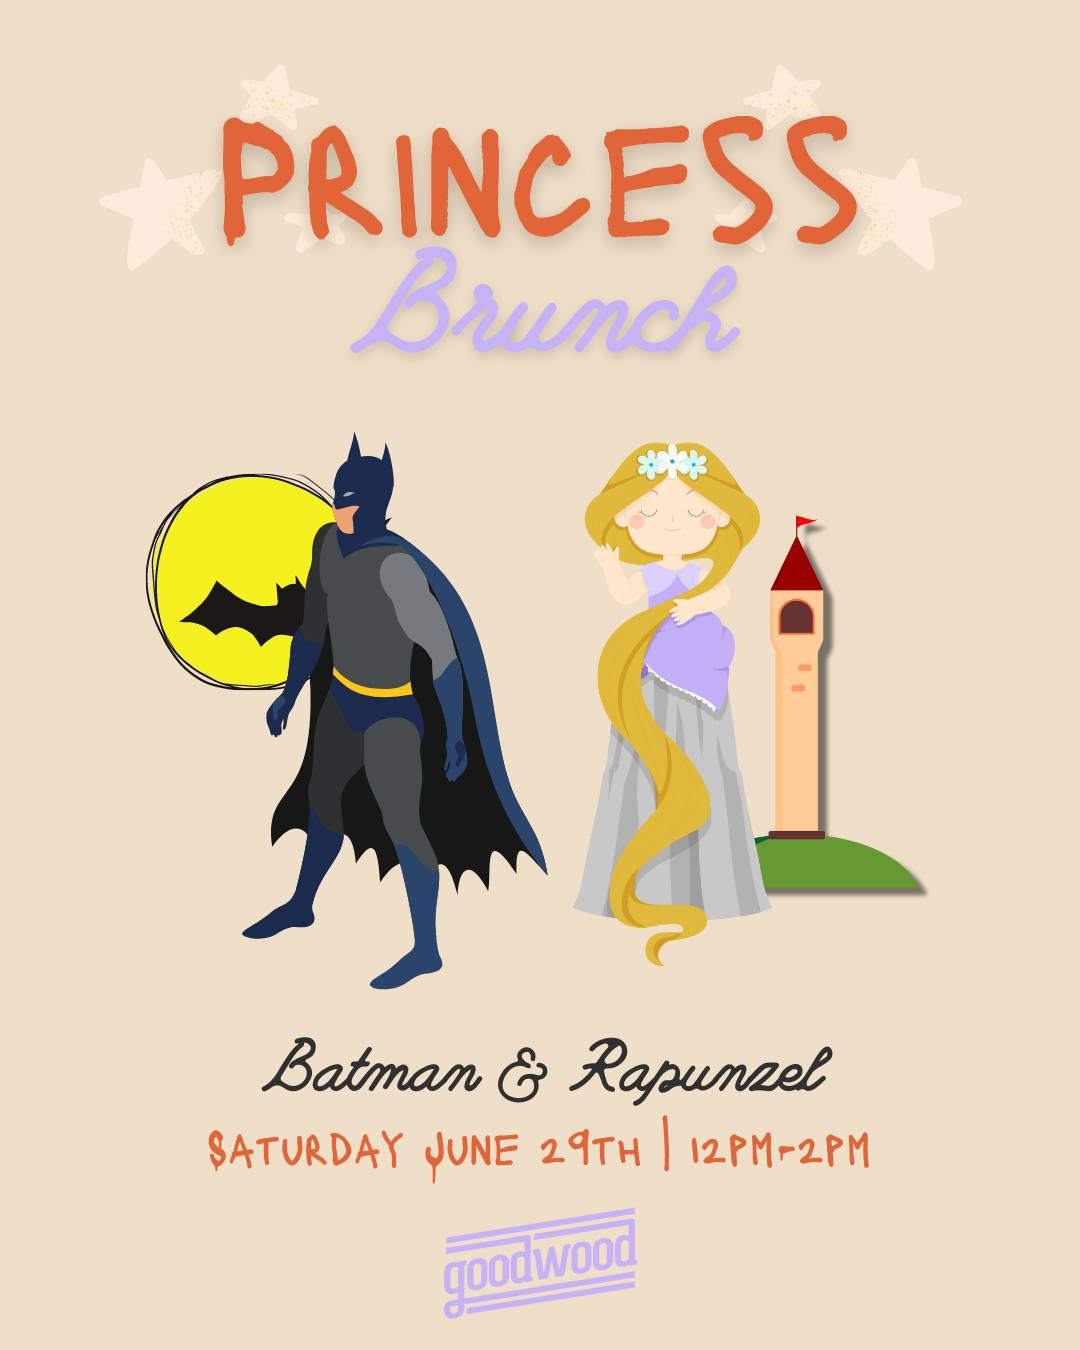 Princess Brunch with Batman and Rapunzel